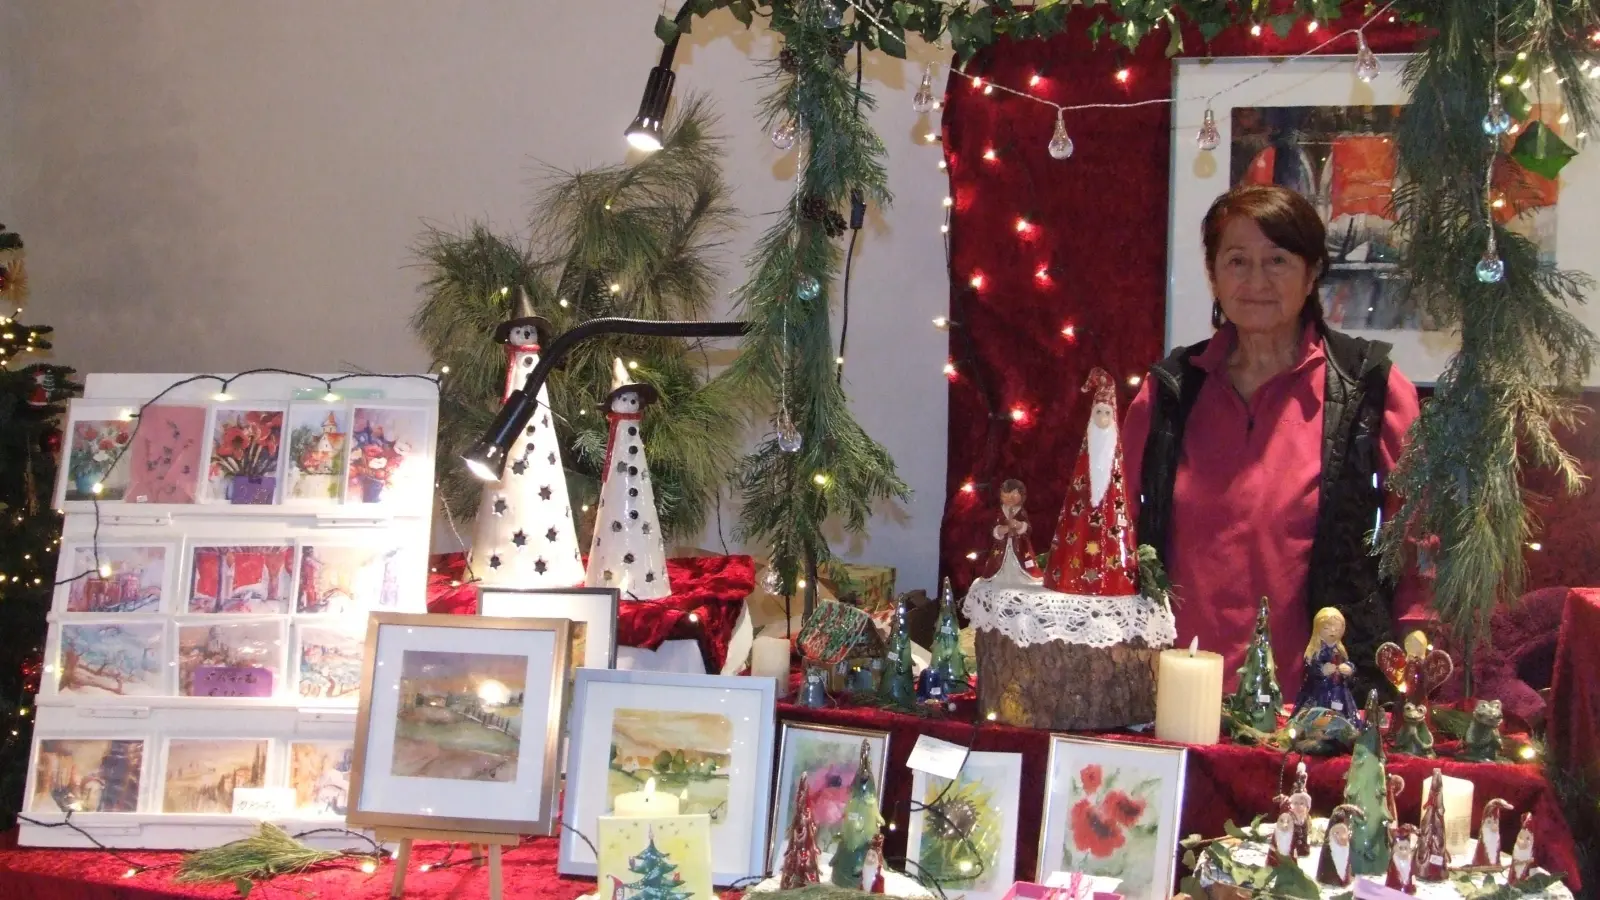 Wie lange sie den Künstler- und Kunsthandwerkermarkt im Rahmen des Dinkelsbühler Weihnachtsmarkts schon organisiert, weiß Chris Moninger gar nicht genau. 20 Jahre, schätzt sie. Diesmal sind die Stände im kleinen Schrannensaal aufgebaut. (Foto: Jasmin Kiendl)